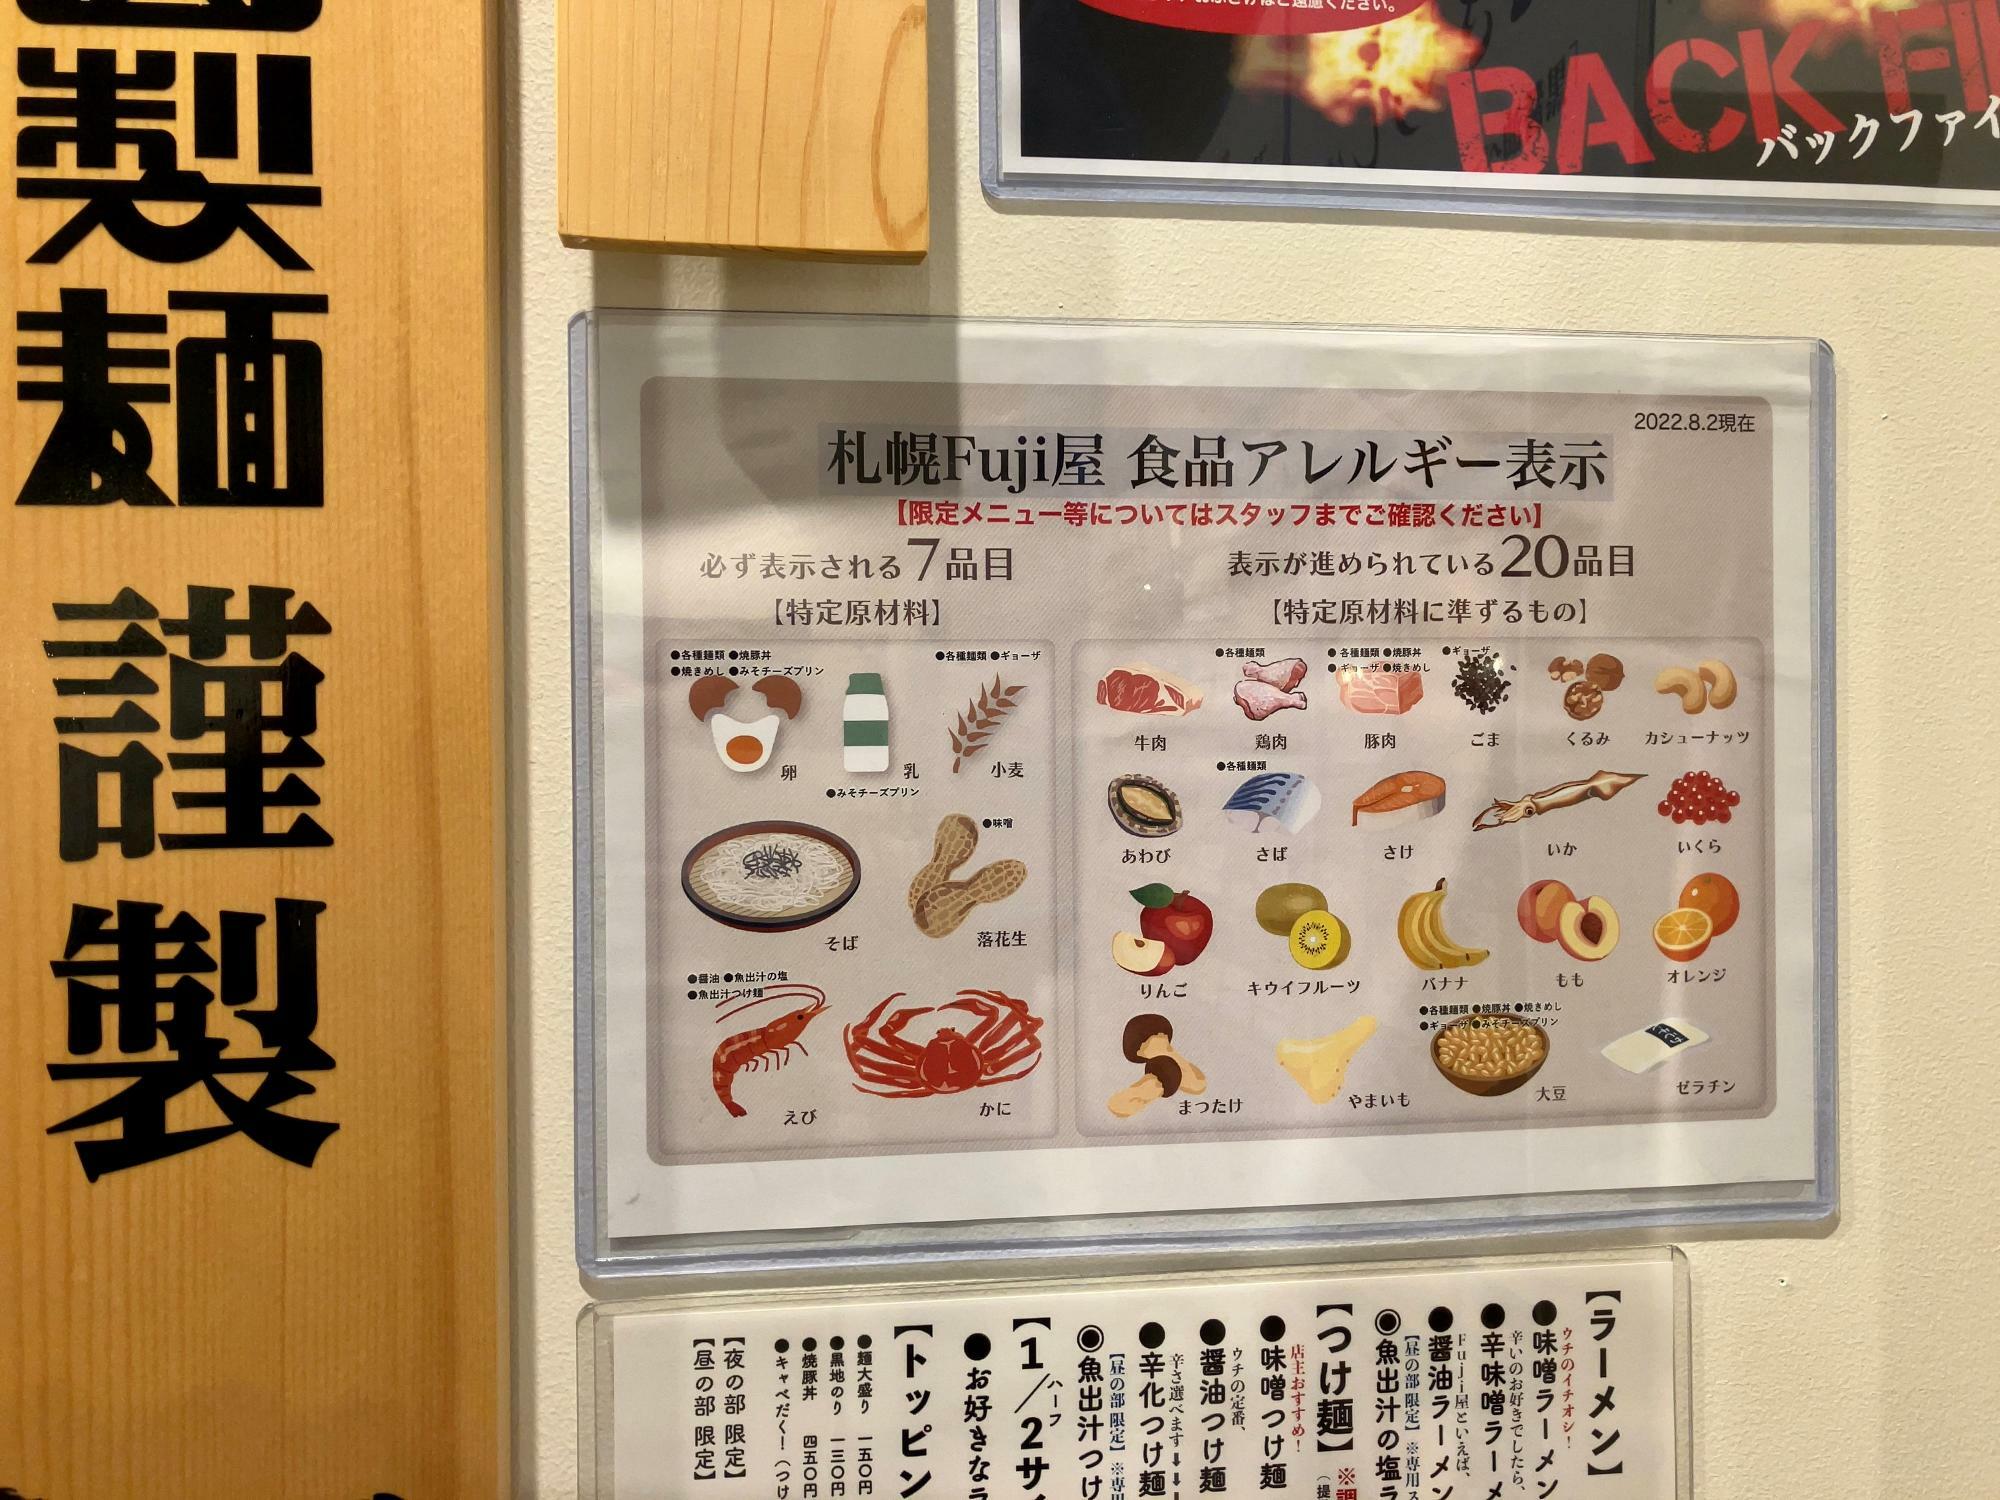 「札幌Fuji屋 食品アレルギー表示」